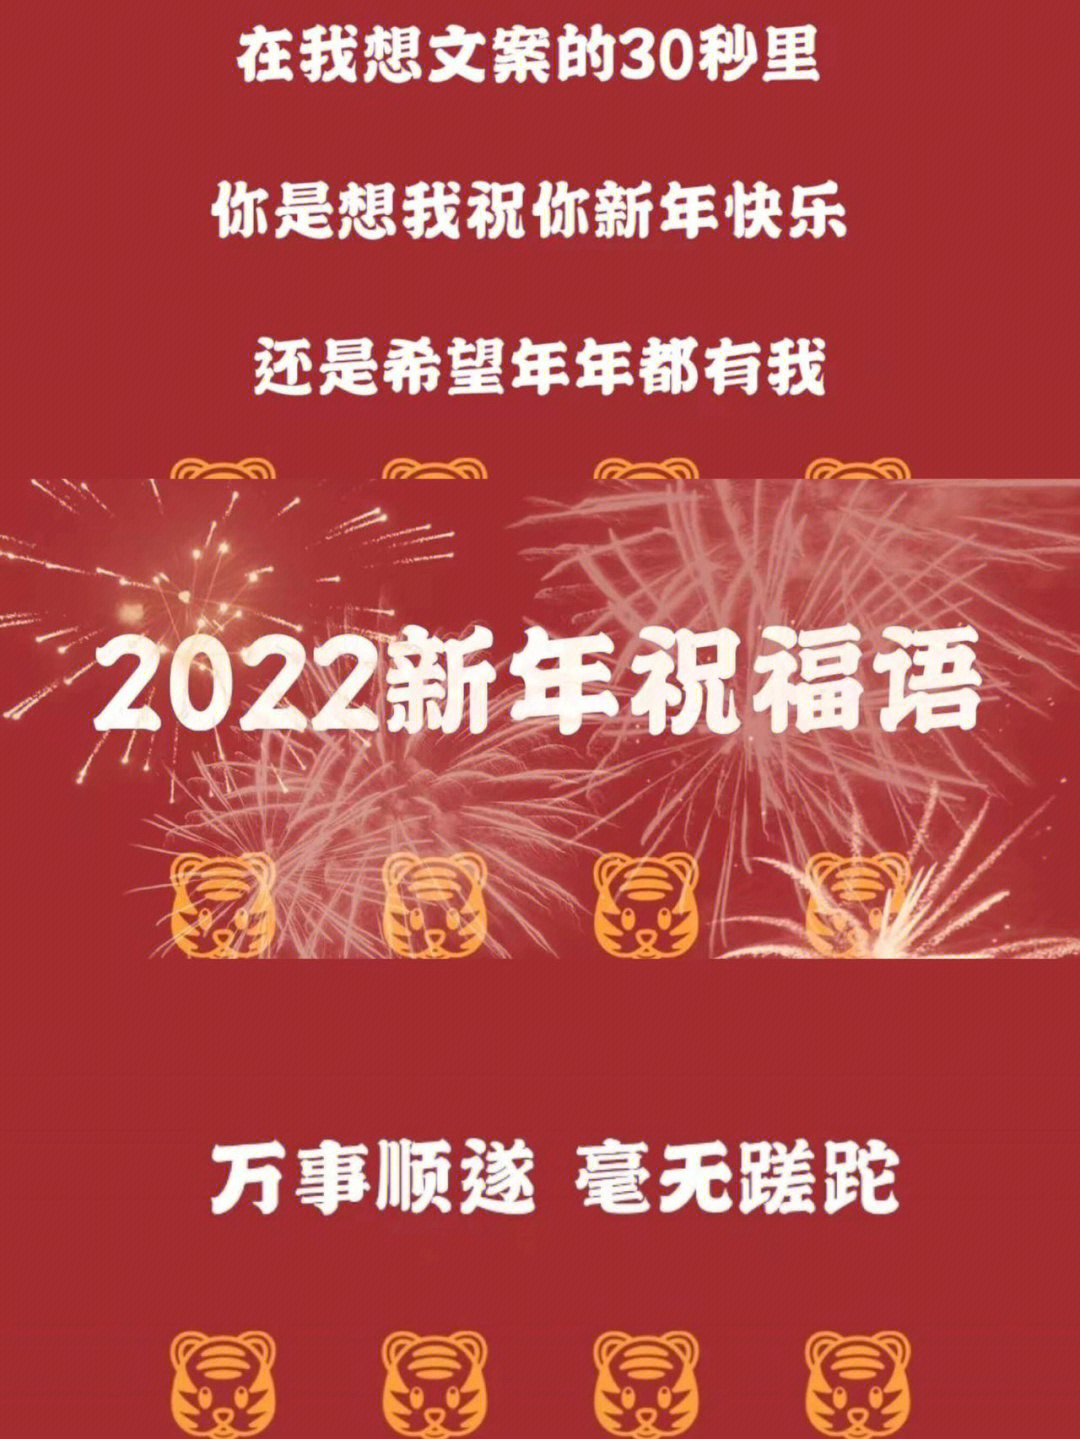 2022发朋友圈的新年祝福语get